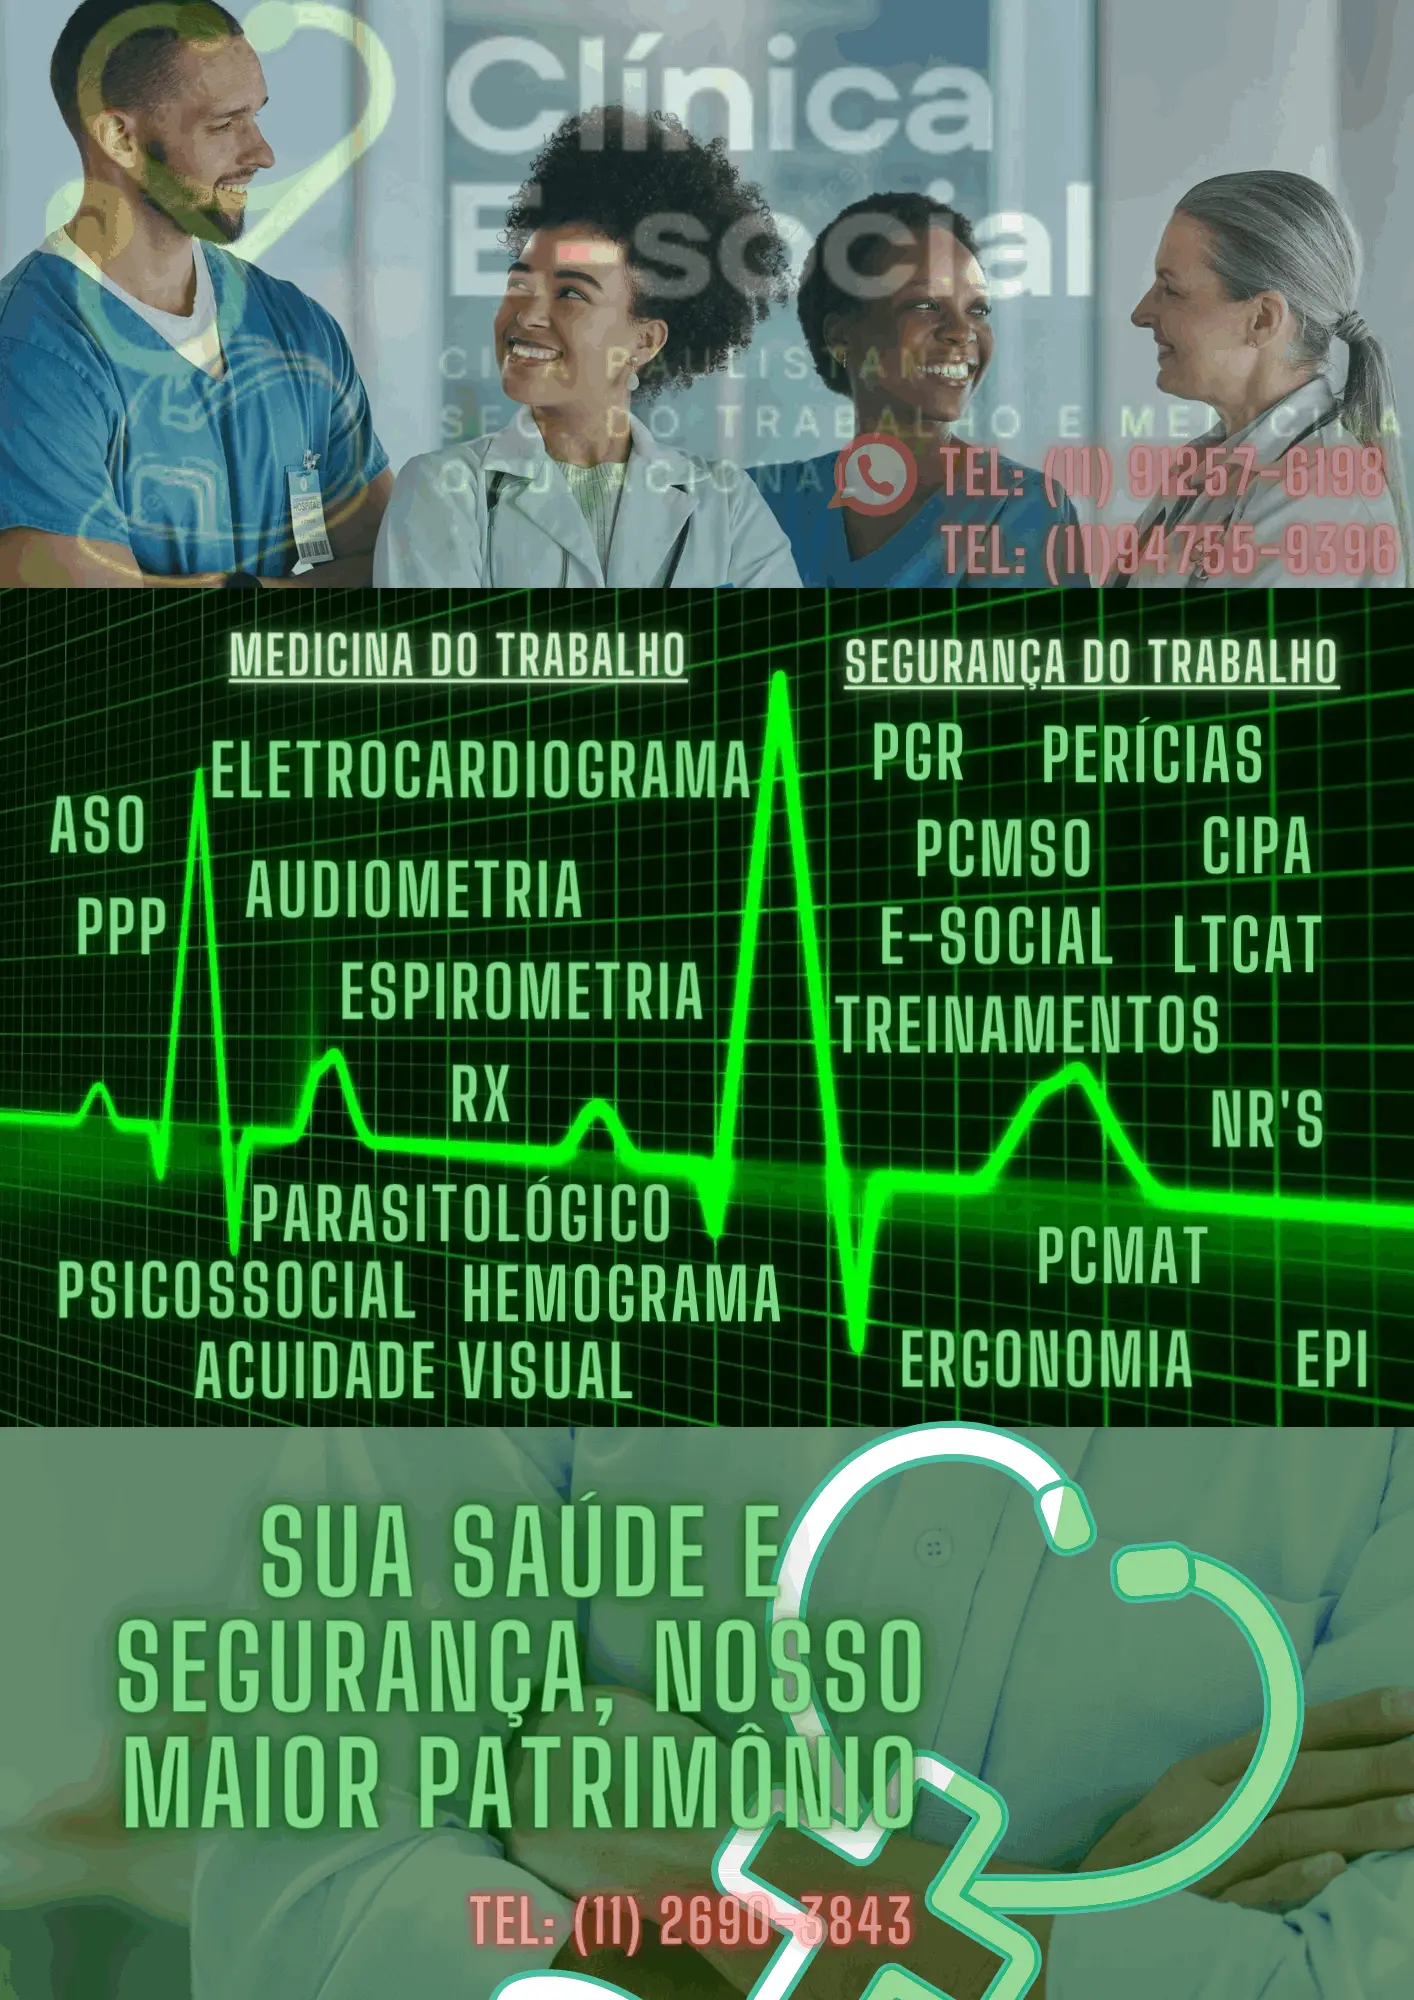 Clinica eSocial